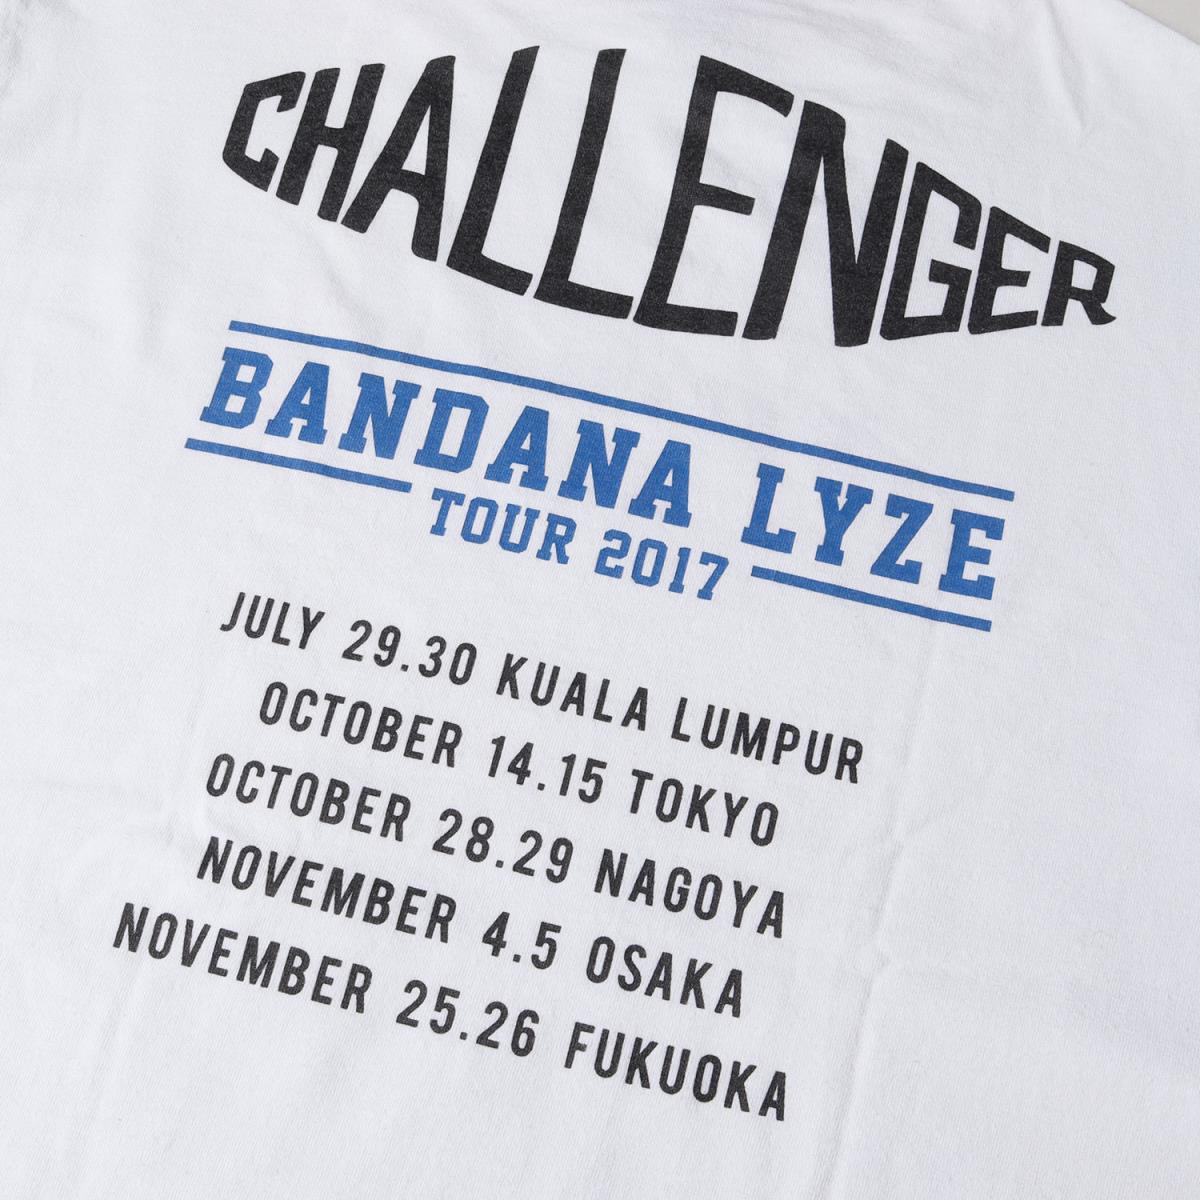 CHALLENGER チャレンジャー Tシャツ BANDANA LYZE ブランドロゴ ロングスリーブTシャツ 17AW ホワイト 白 M トップス  カットソー 長袖 【メンズ】【中古】【K3342】 | ブランド古着のBEEGLE by Boo-Bee